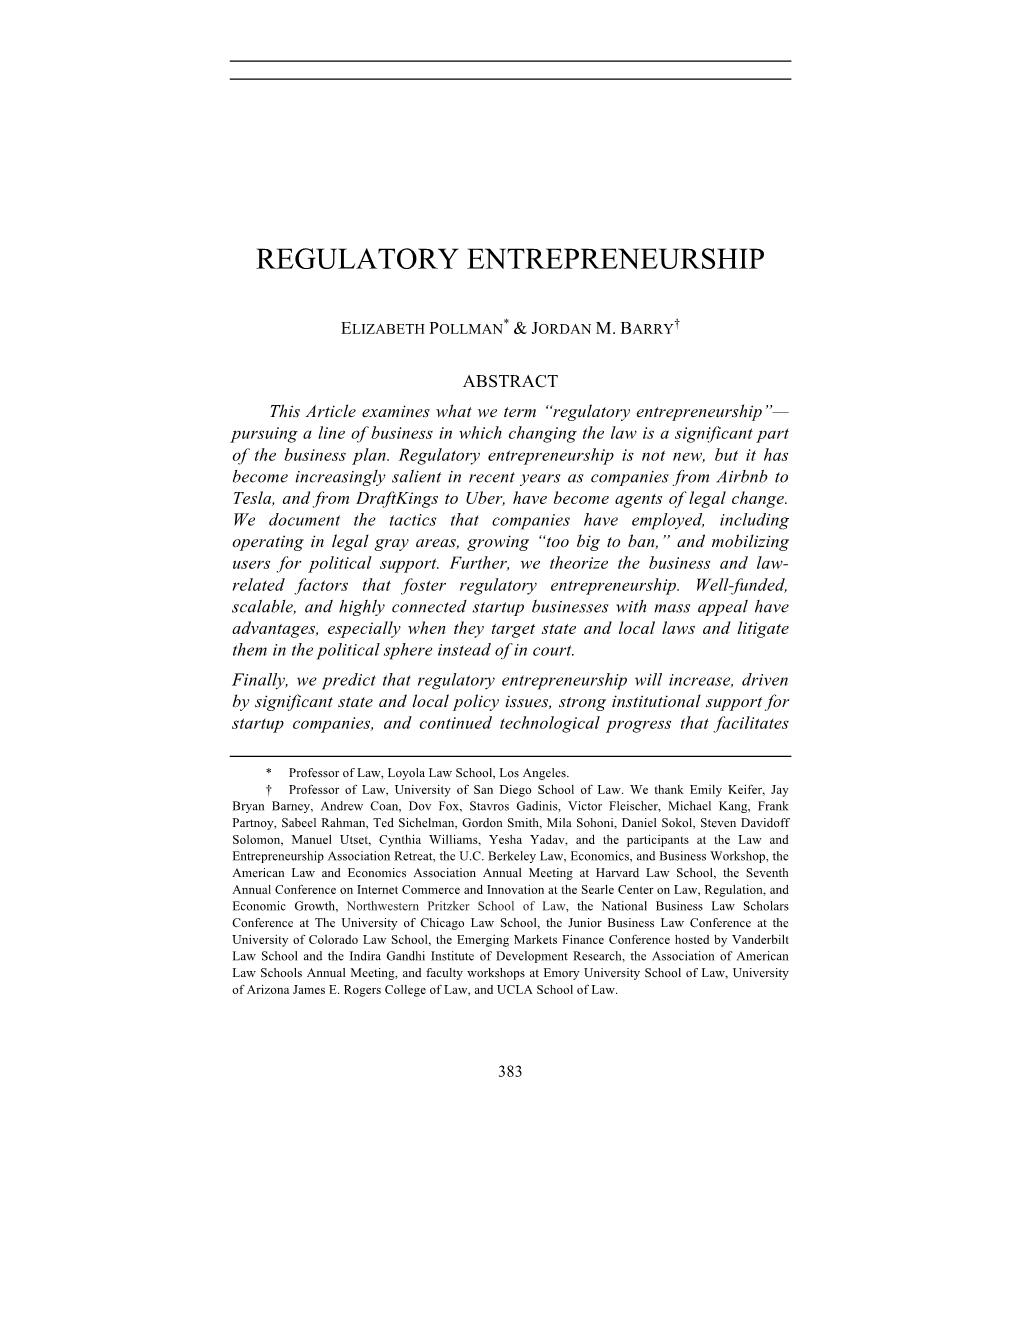 Regulatory Entrepreneurship